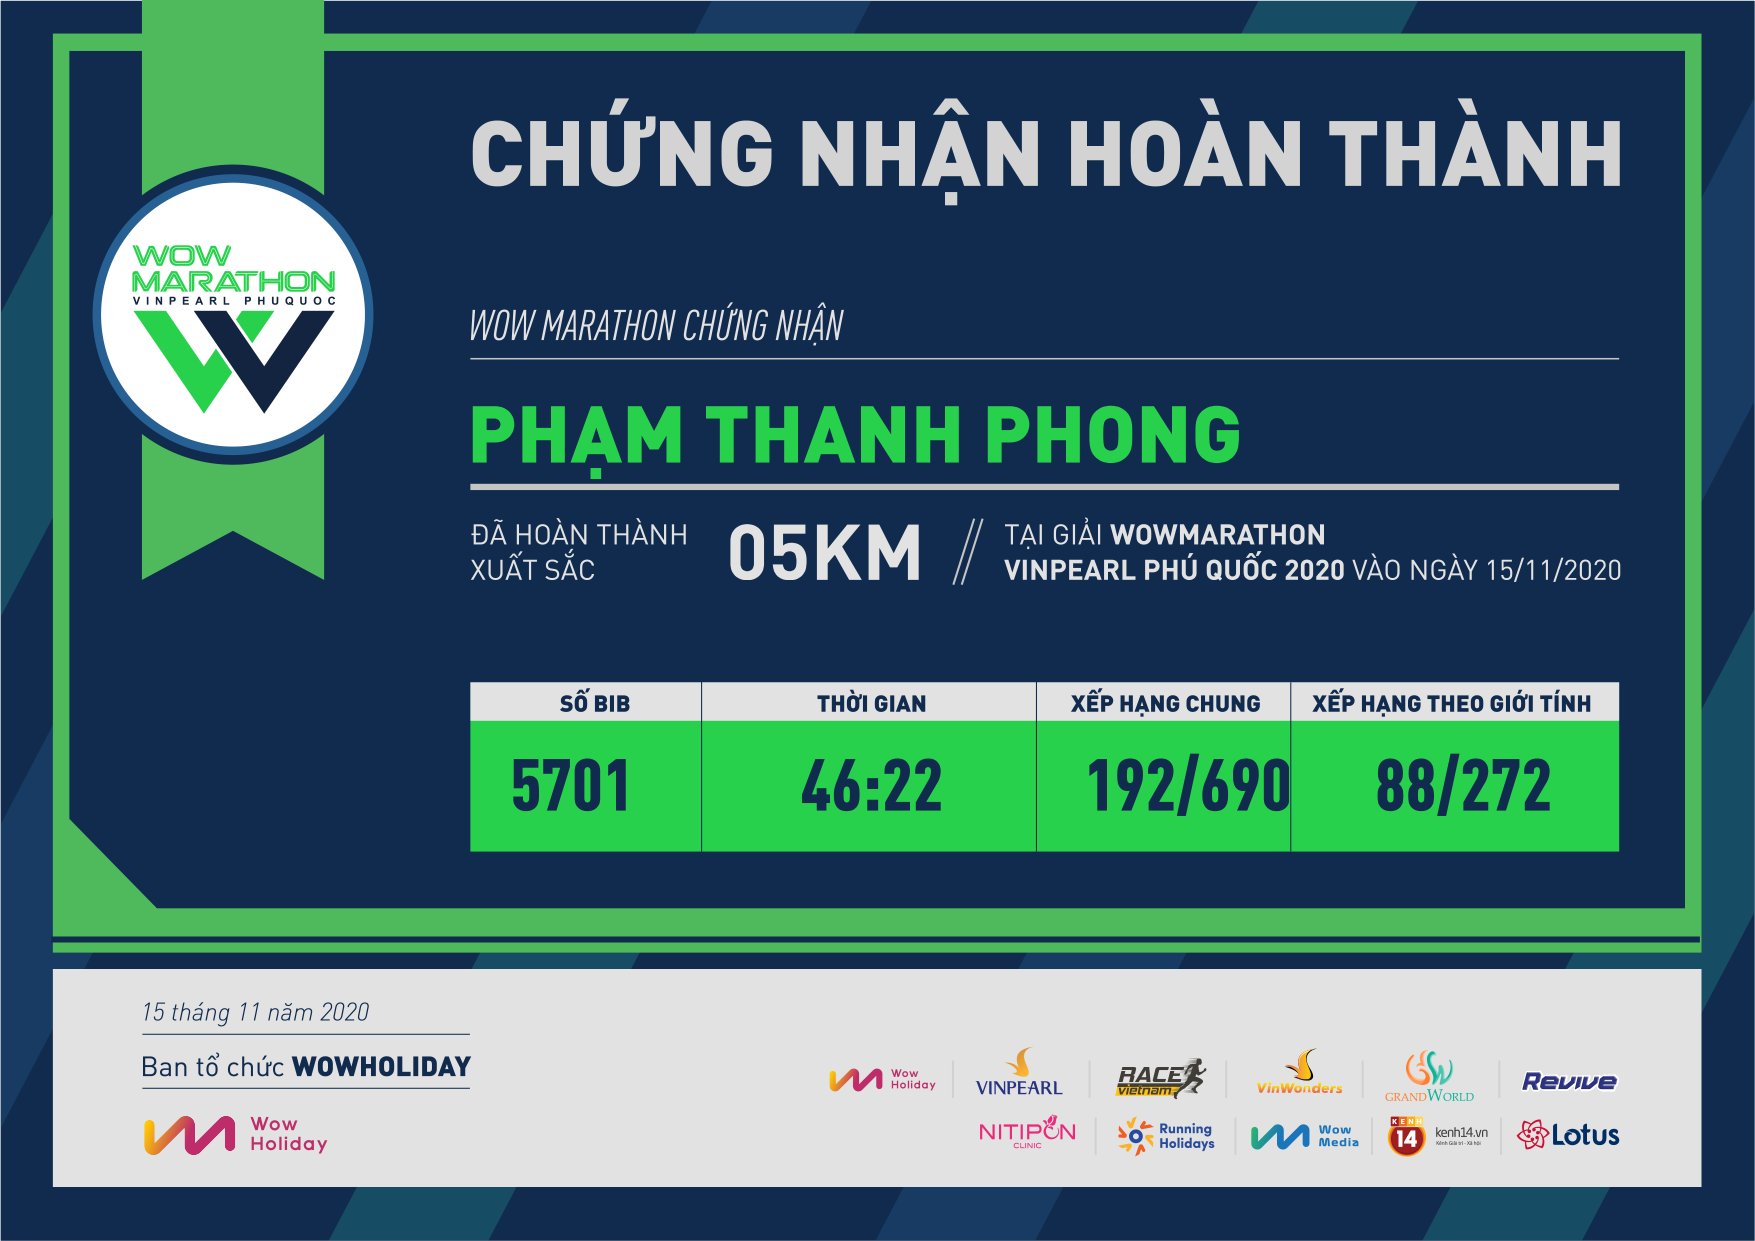 5701 - Phạm Thanh Phong